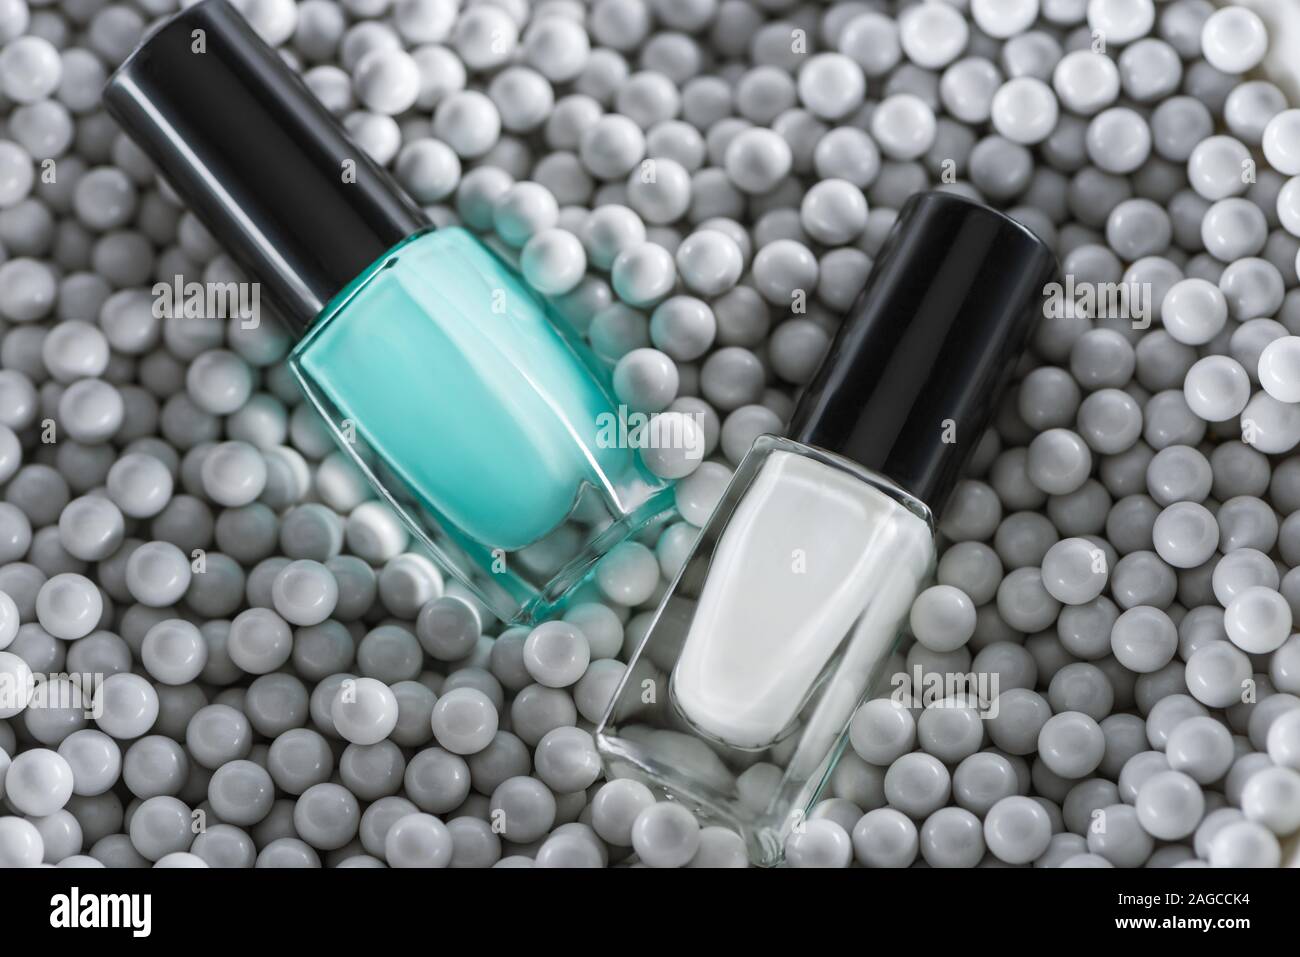 Vista superiore del bianco e del blu per unghie in bottiglie in grigio perle decorative Foto Stock